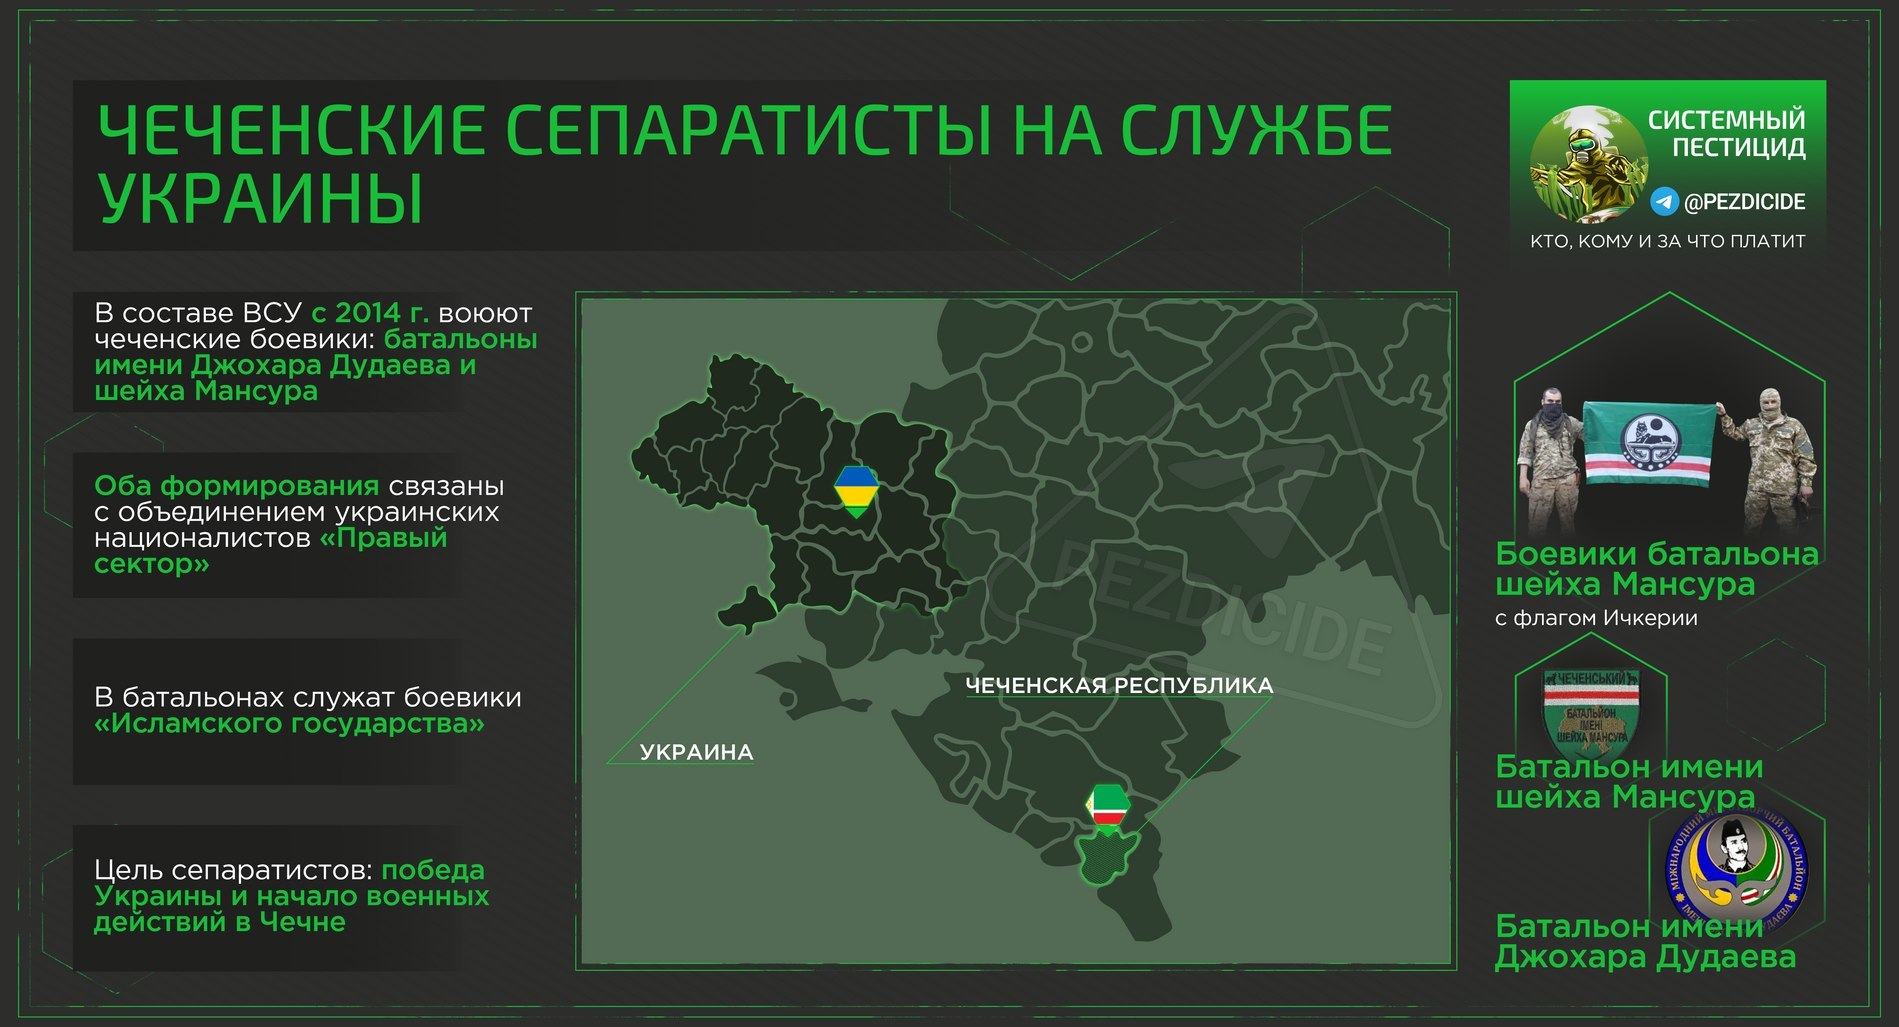 Какие страны оказывали помощь сепаратистам. Украинские сепаратисты. Сепаратисты 2014 Украина.